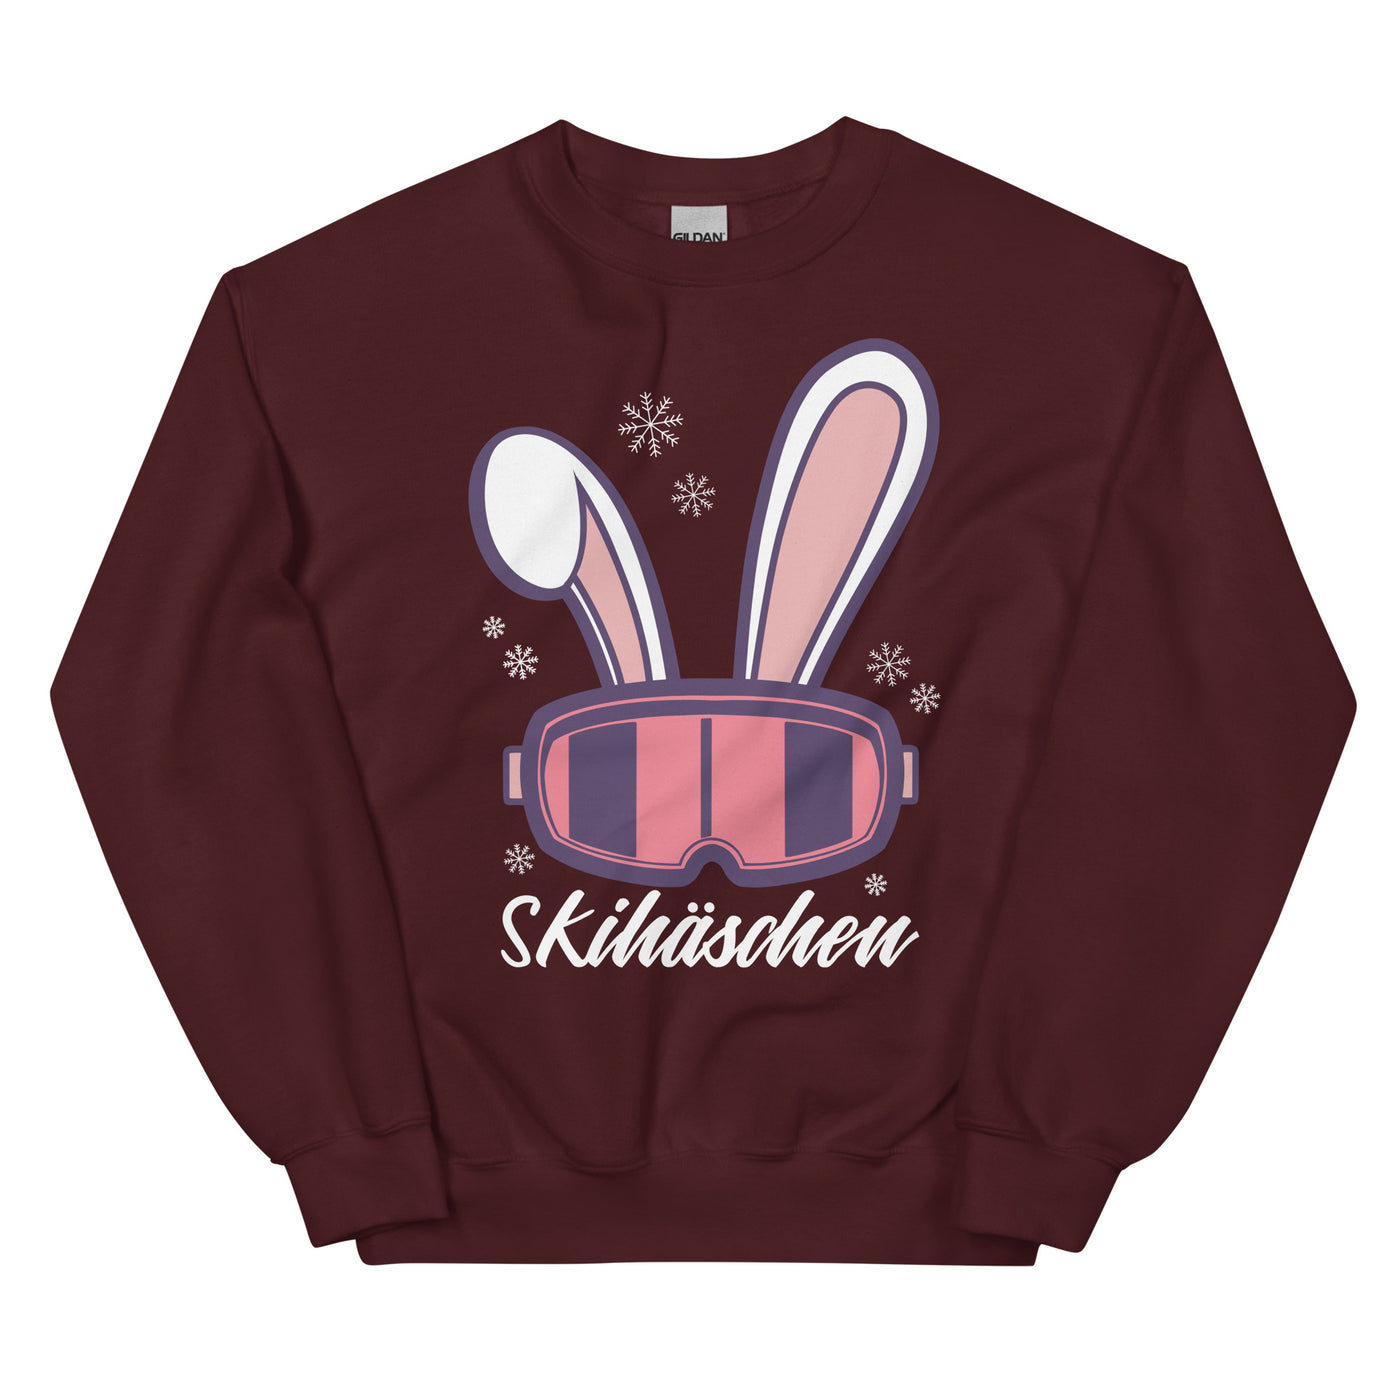 Skihäschen - (S.K) - Sweatshirt (Unisex) klettern Maroon